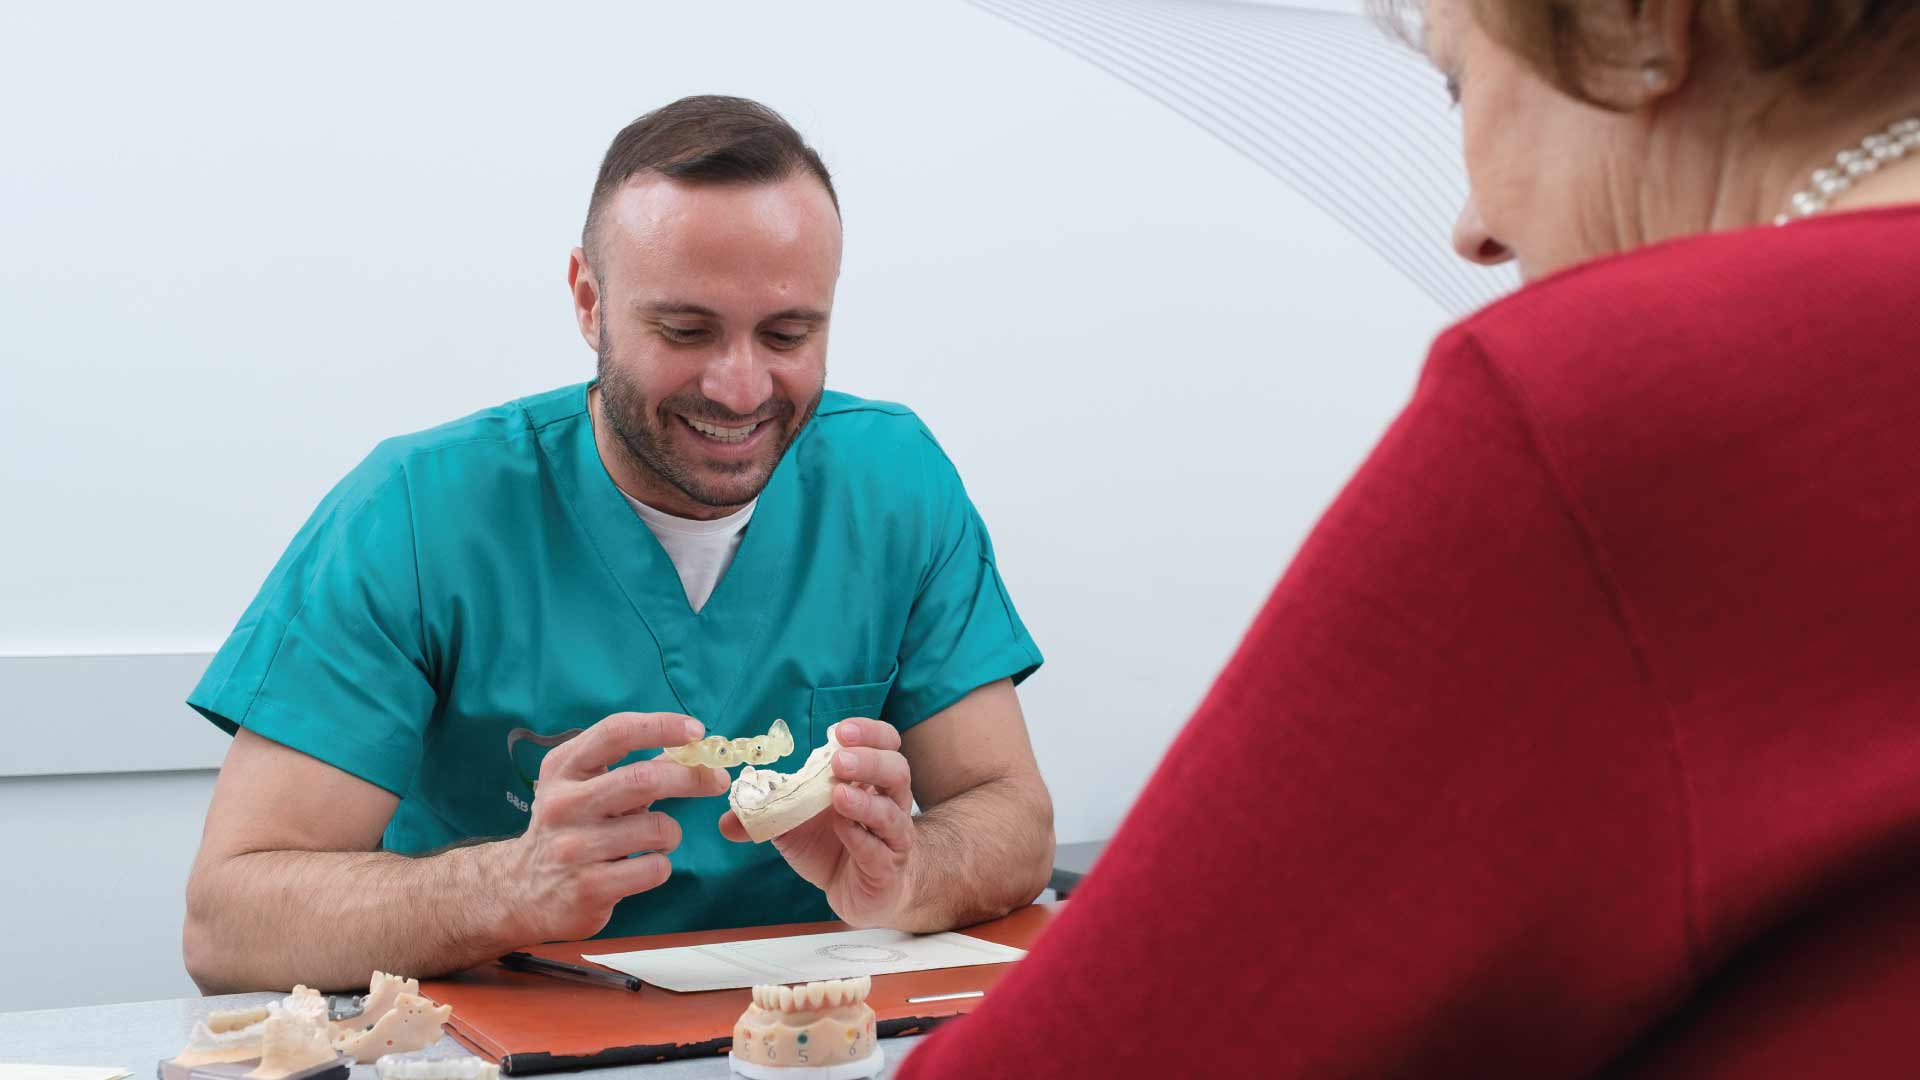 Implantologia dentale rischi